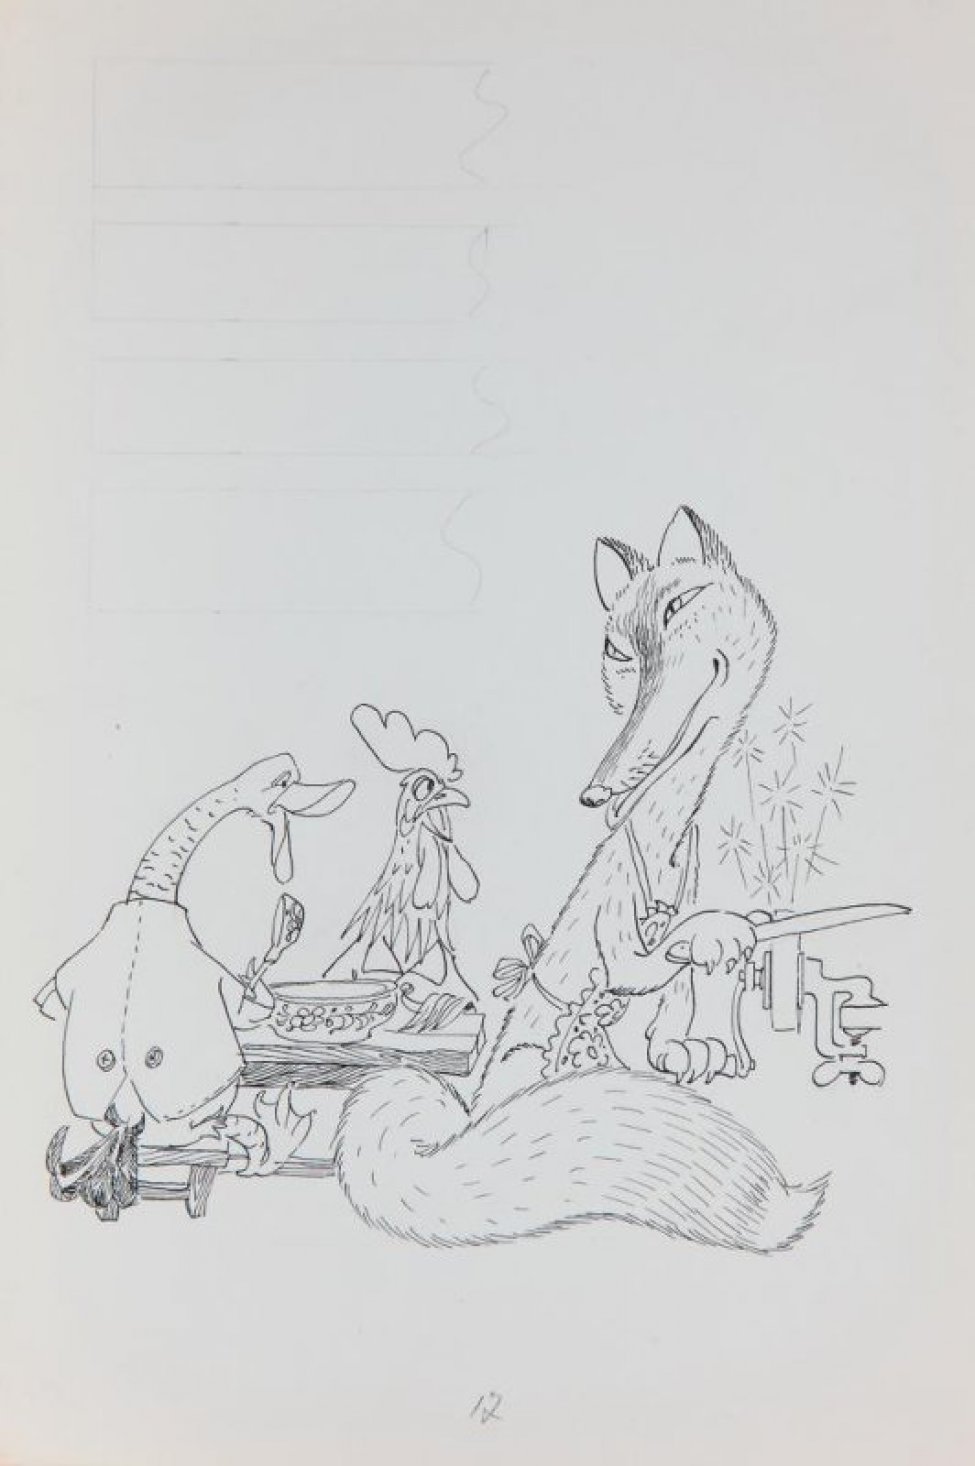 В нижней части листа - стилизованное изображение слева - гуся с ложкой и петуха, сидящих за столом, справа - лисы в фартучке, затачивающей нож на точильном станке. В верхней части слева - разметка графитным карандашом.